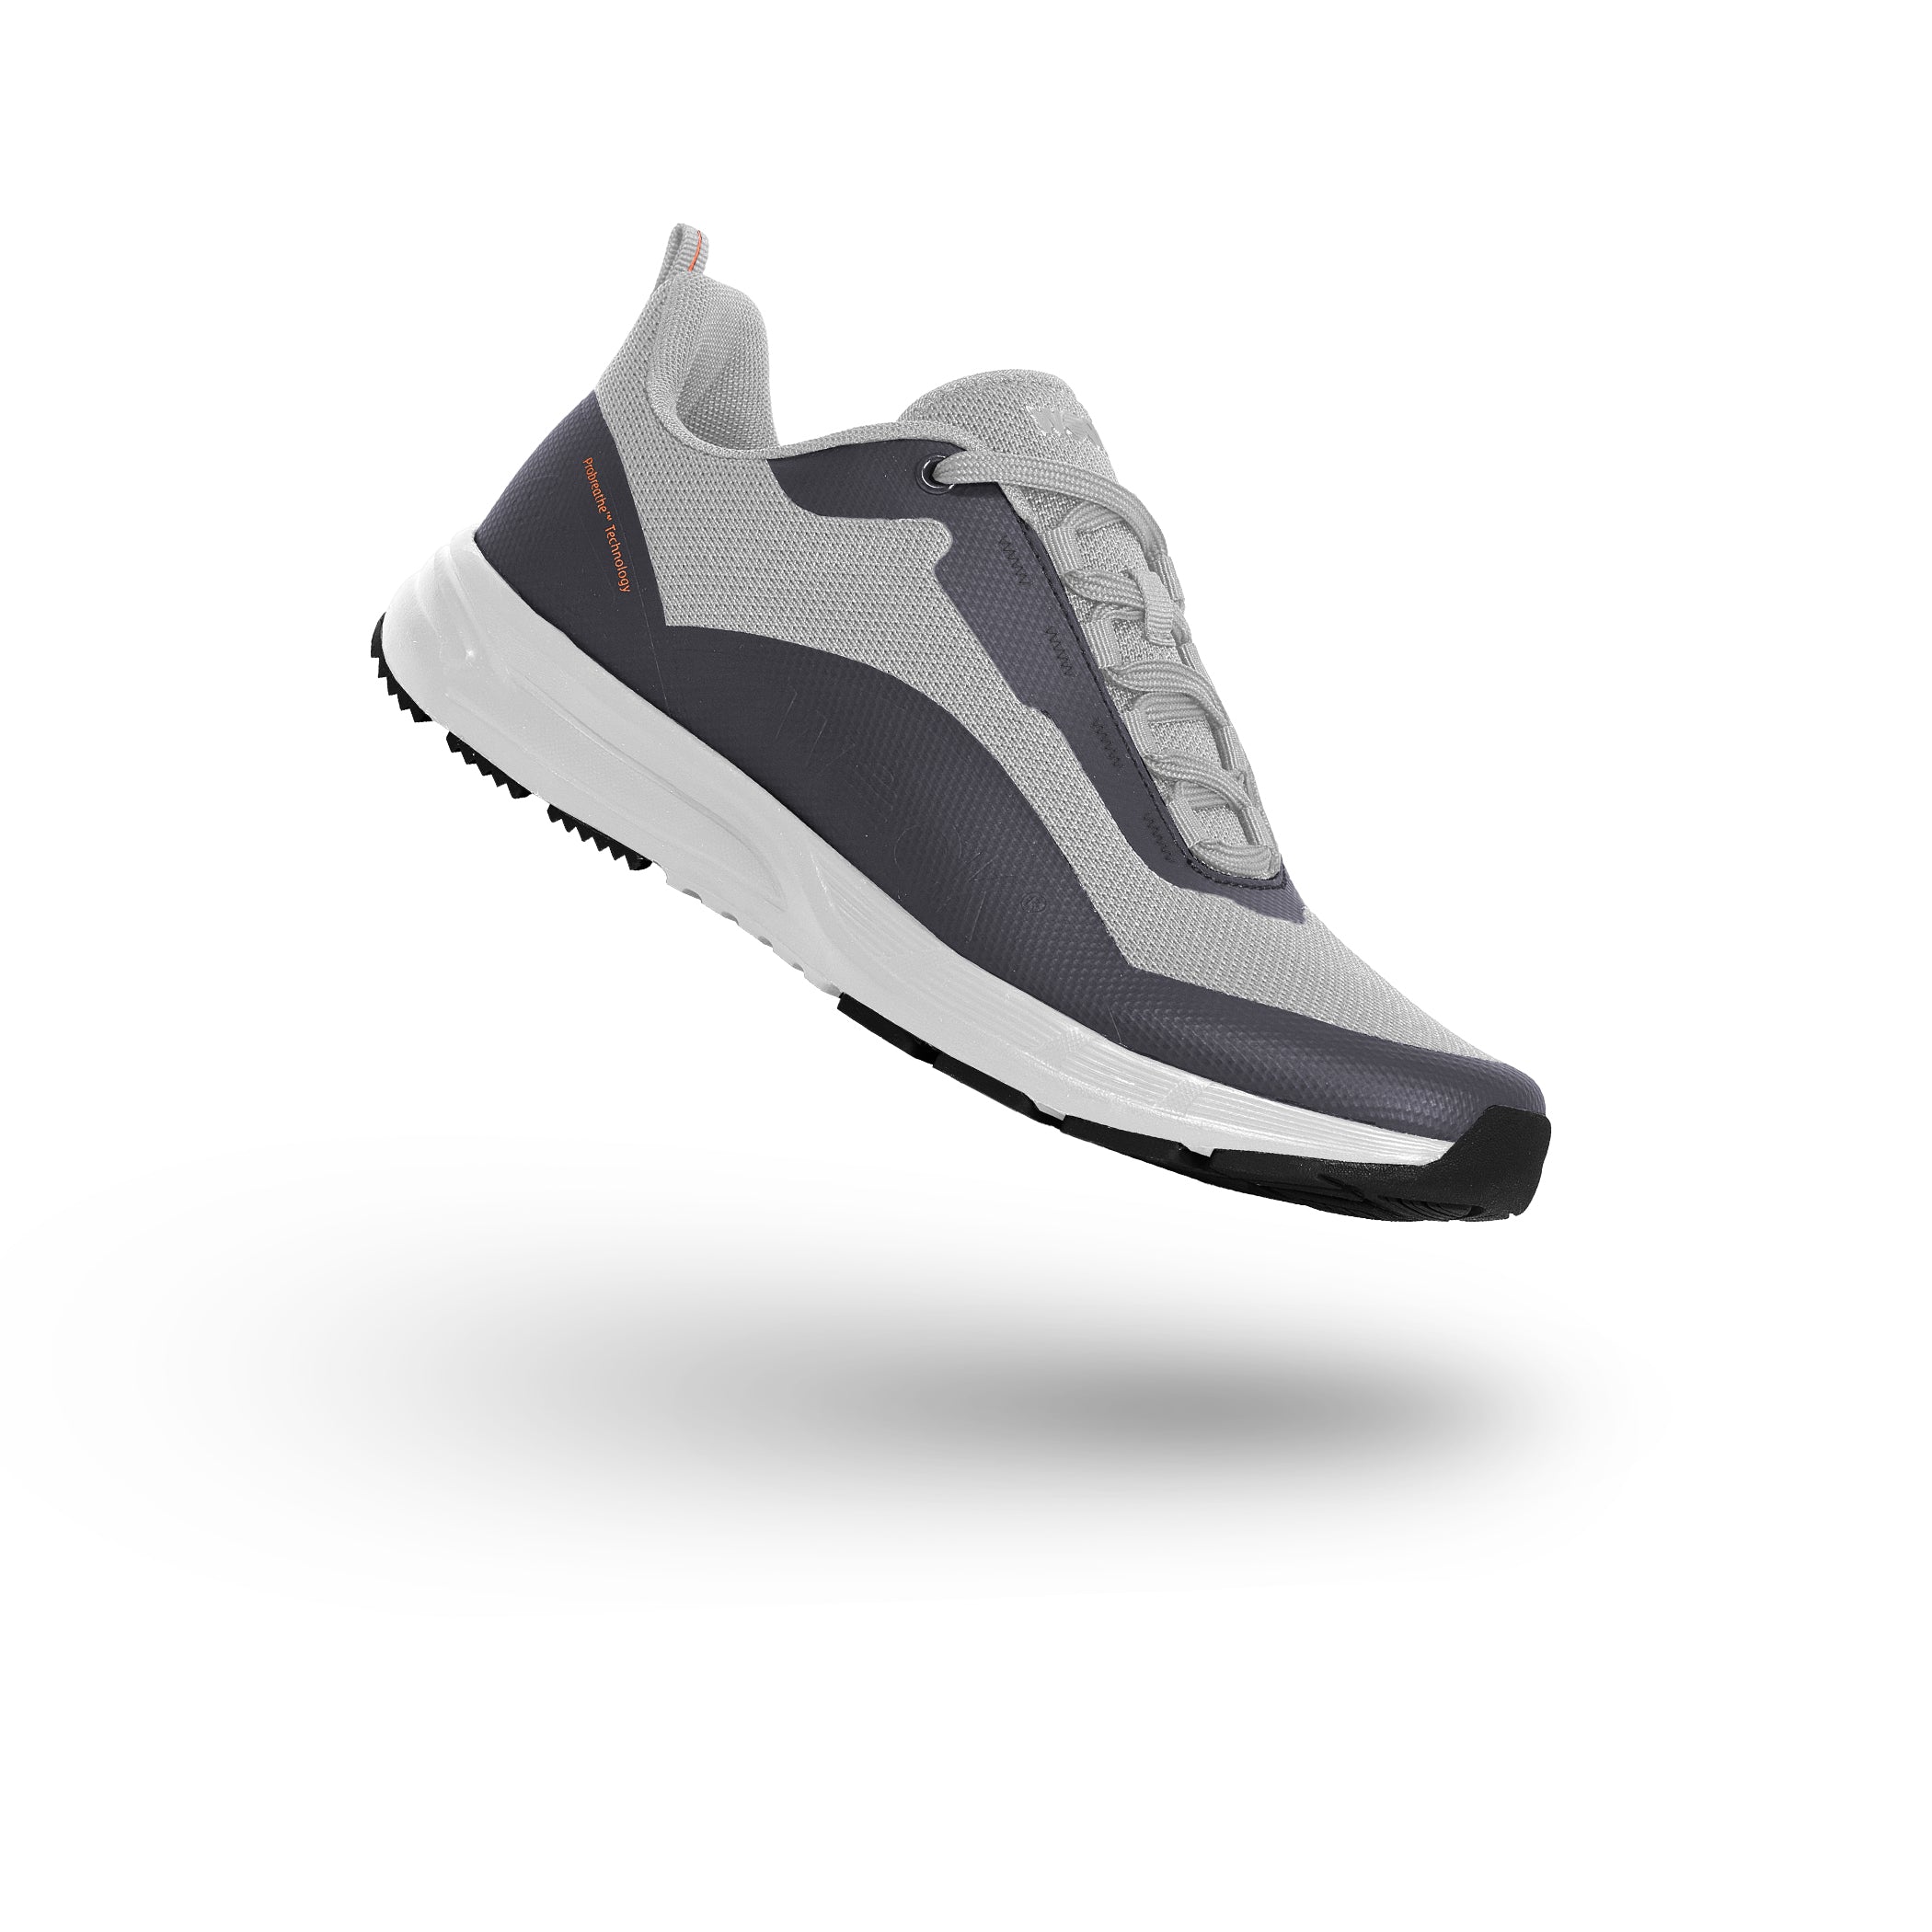 REBLAST sneaker#colore_09-silver